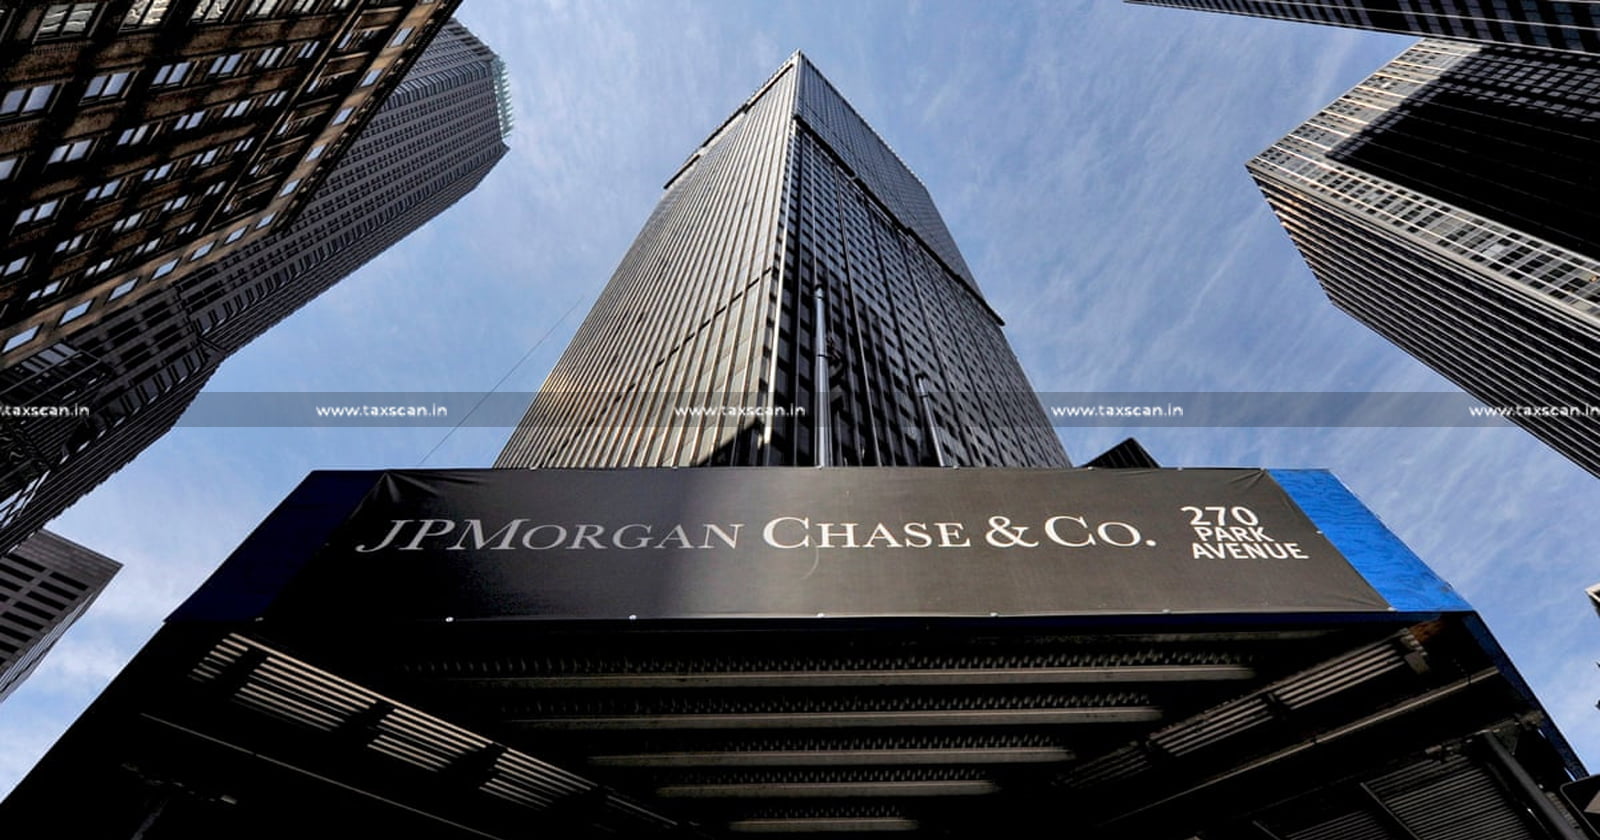 CA Vacancy in JPMorgan Chase & Co. - CA Vacancy - JPMorgan Chase & Co. Jobs - CA - JPMorgan Chase & Co. vacancies - JPMorgan Chase & Co. - CA Vacancies - taxscan